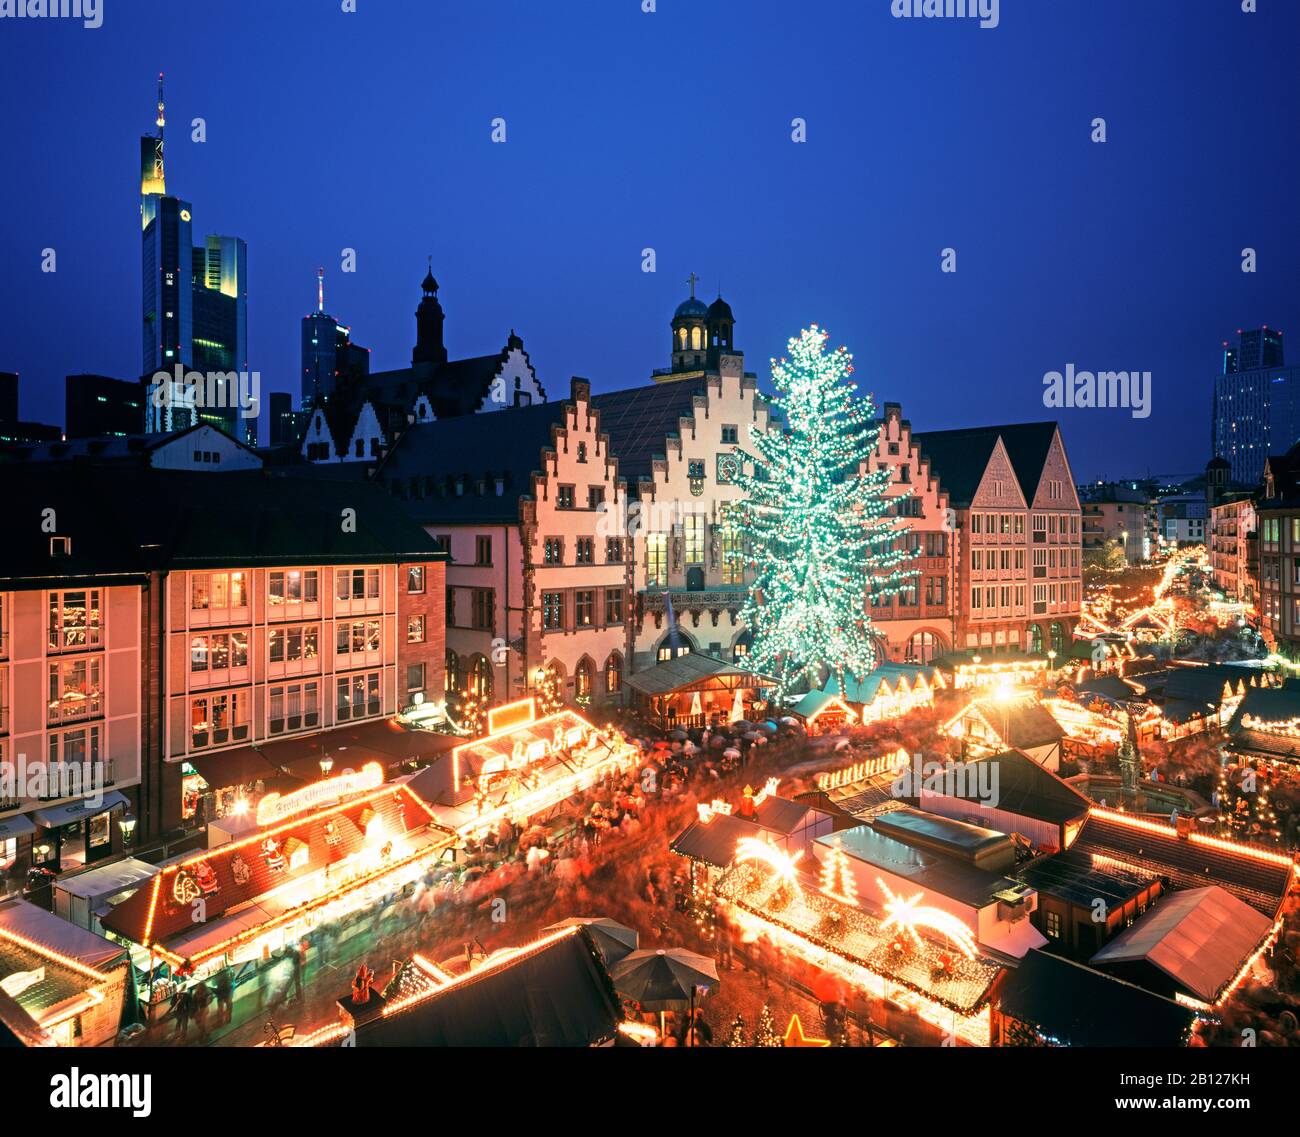 Christmas market, Frankfurt am Main, Germany Stock Photo